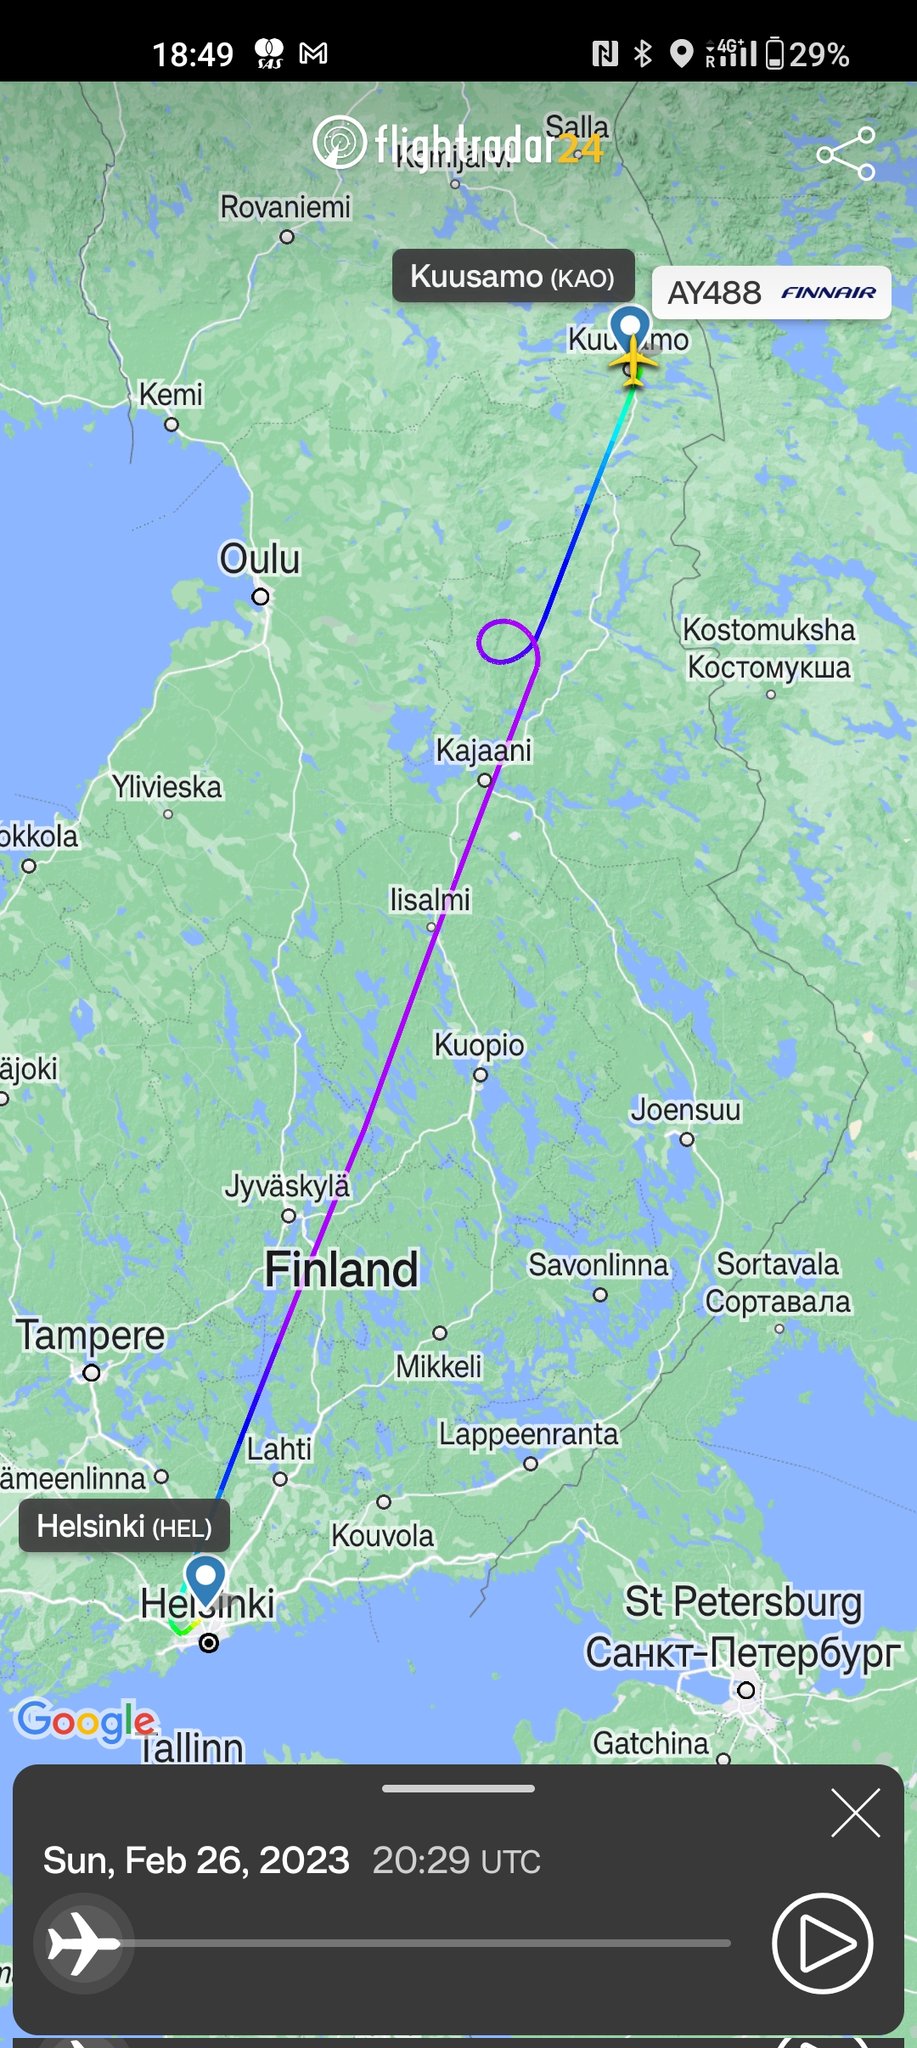 14 비행중 갑자기 360도 선회한 핀란드 항공기 사유 - 모든 승객들에게 오로라를 보여주기 위해.jpg